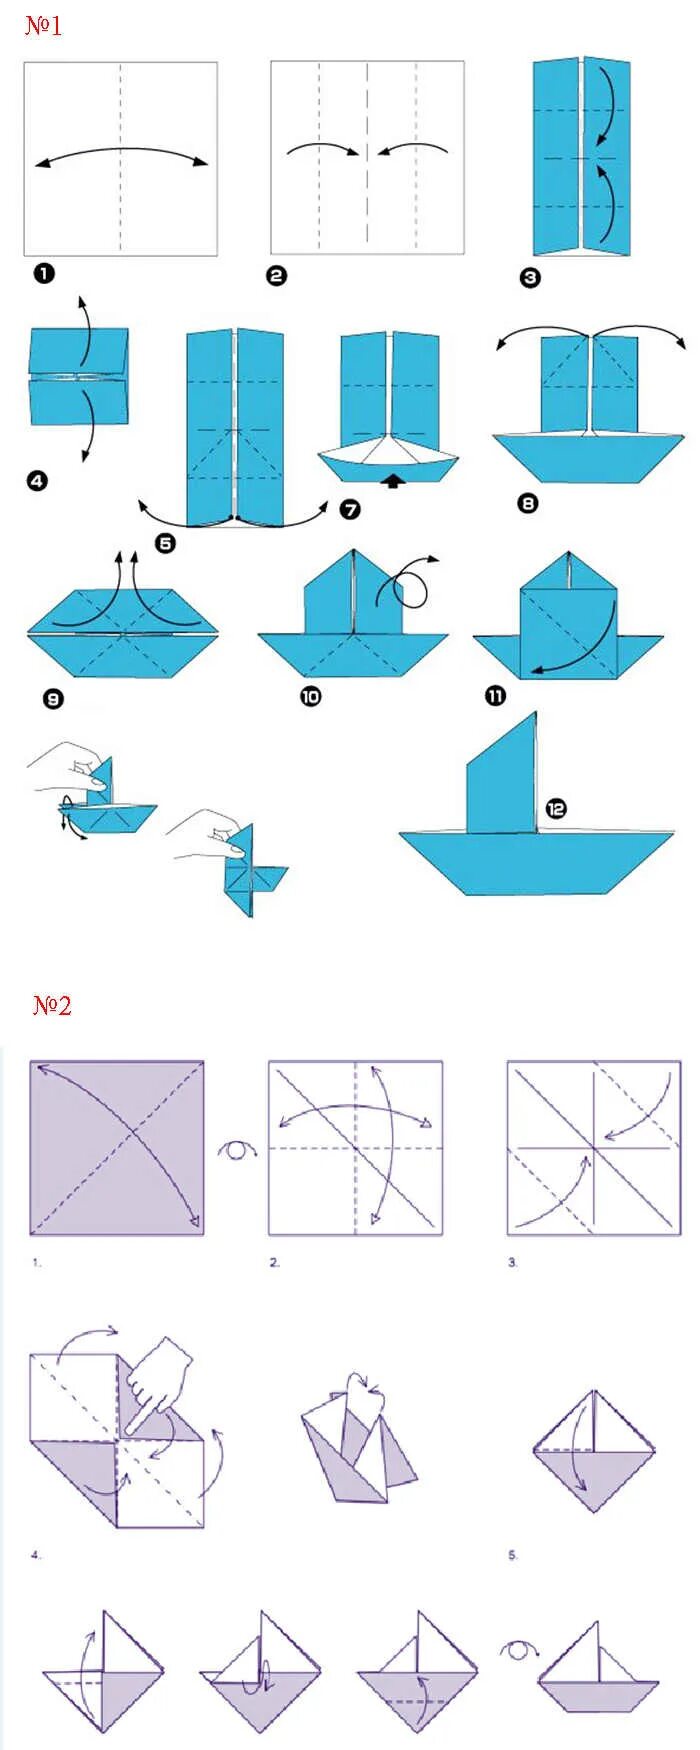 Кораблик из бумаги а4 для начинающих. Оригами из бумаги схемы для начинающих кораблик. Как сделать кораблик из бумаги пошаговая инструкция. Как делается кораблик из бумаги а4. Оригами из бумаги кораблик схема поэтапно для детей.